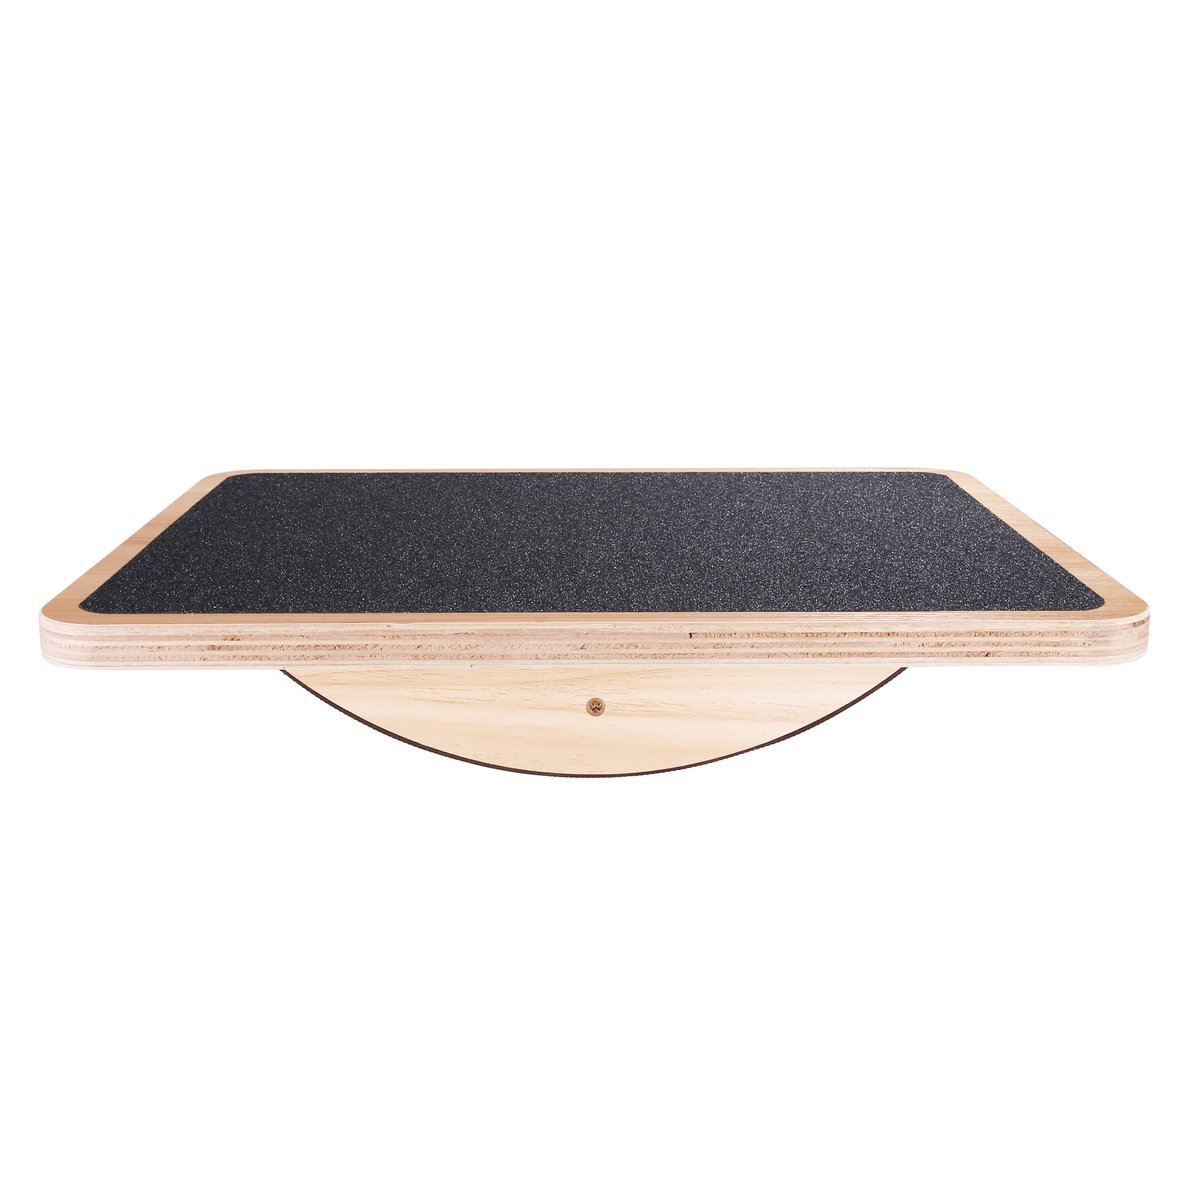 StrongTek Professional Wooden Balance Board, Rocker Board, Wood Standing Desk Accessory, Balancing Board for Under Desk, Anti Slip Roller, Core Str...